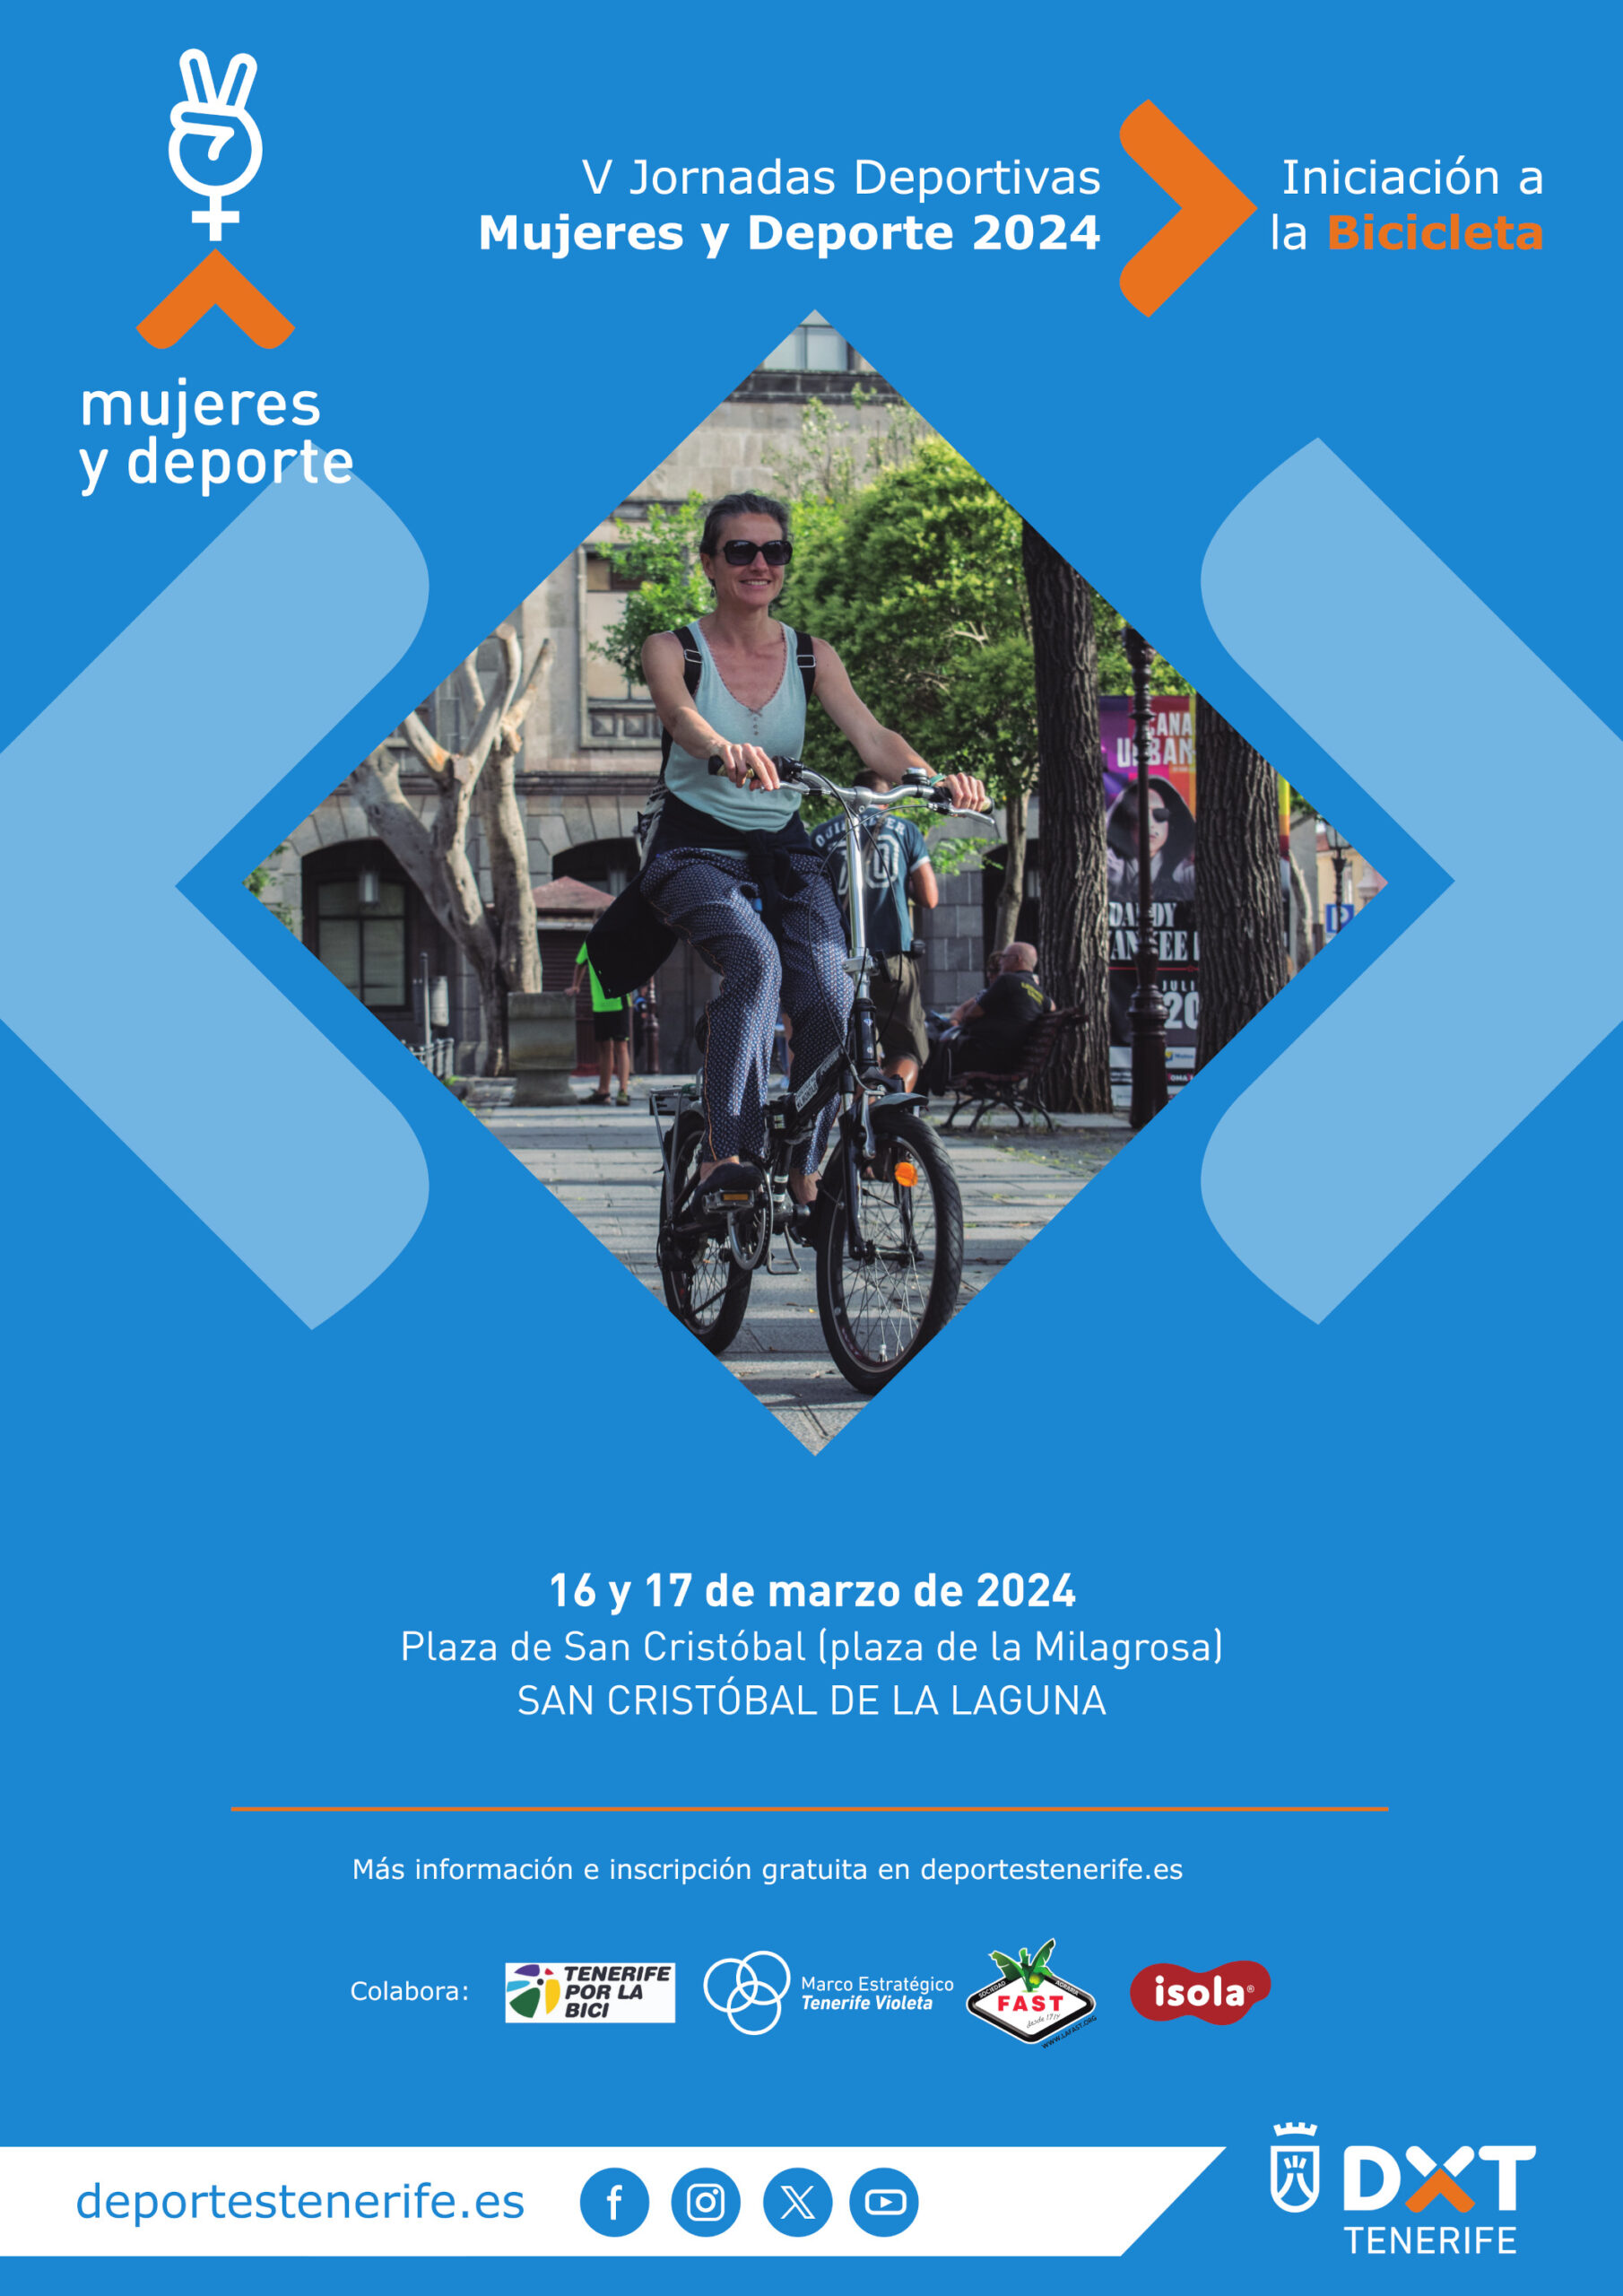 V Jornadas Deportivas Mujeres y Deporte 2024 - Iniciación a la Bicicleta